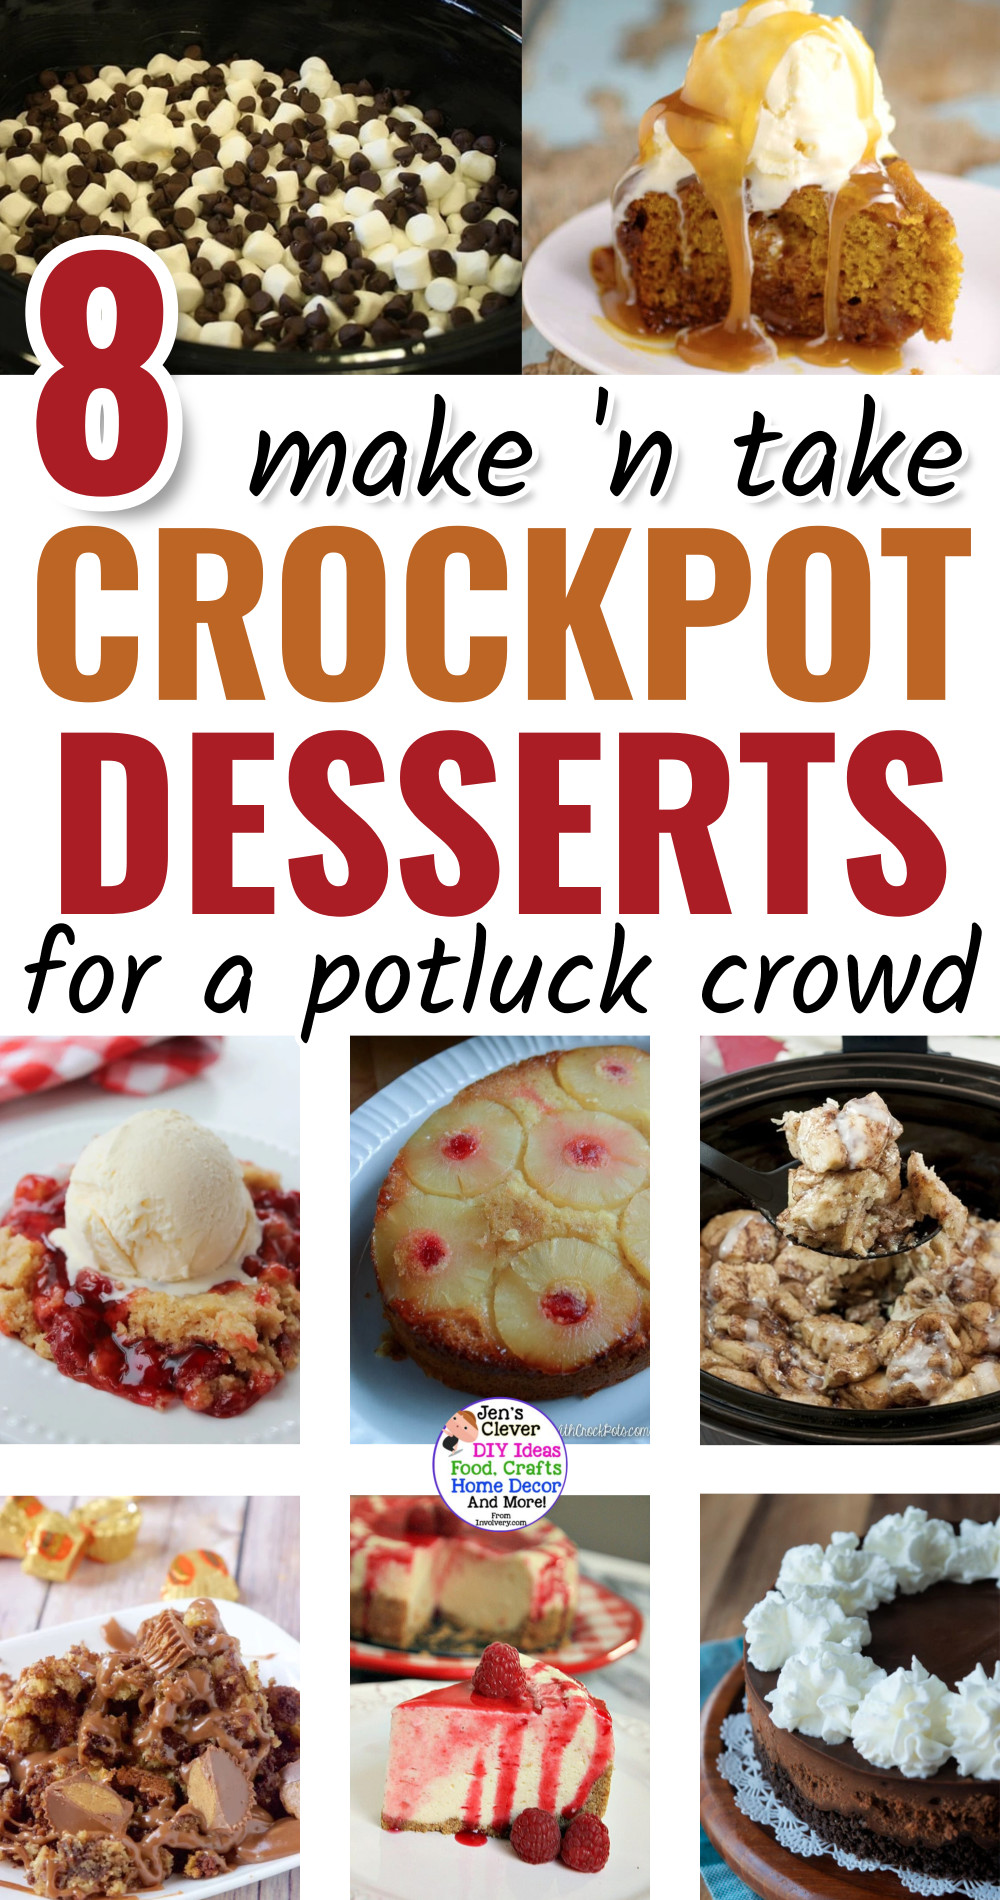 Crockpot Desserts - Crockpot Dump Dessert Recipes For a Potluck Crowd